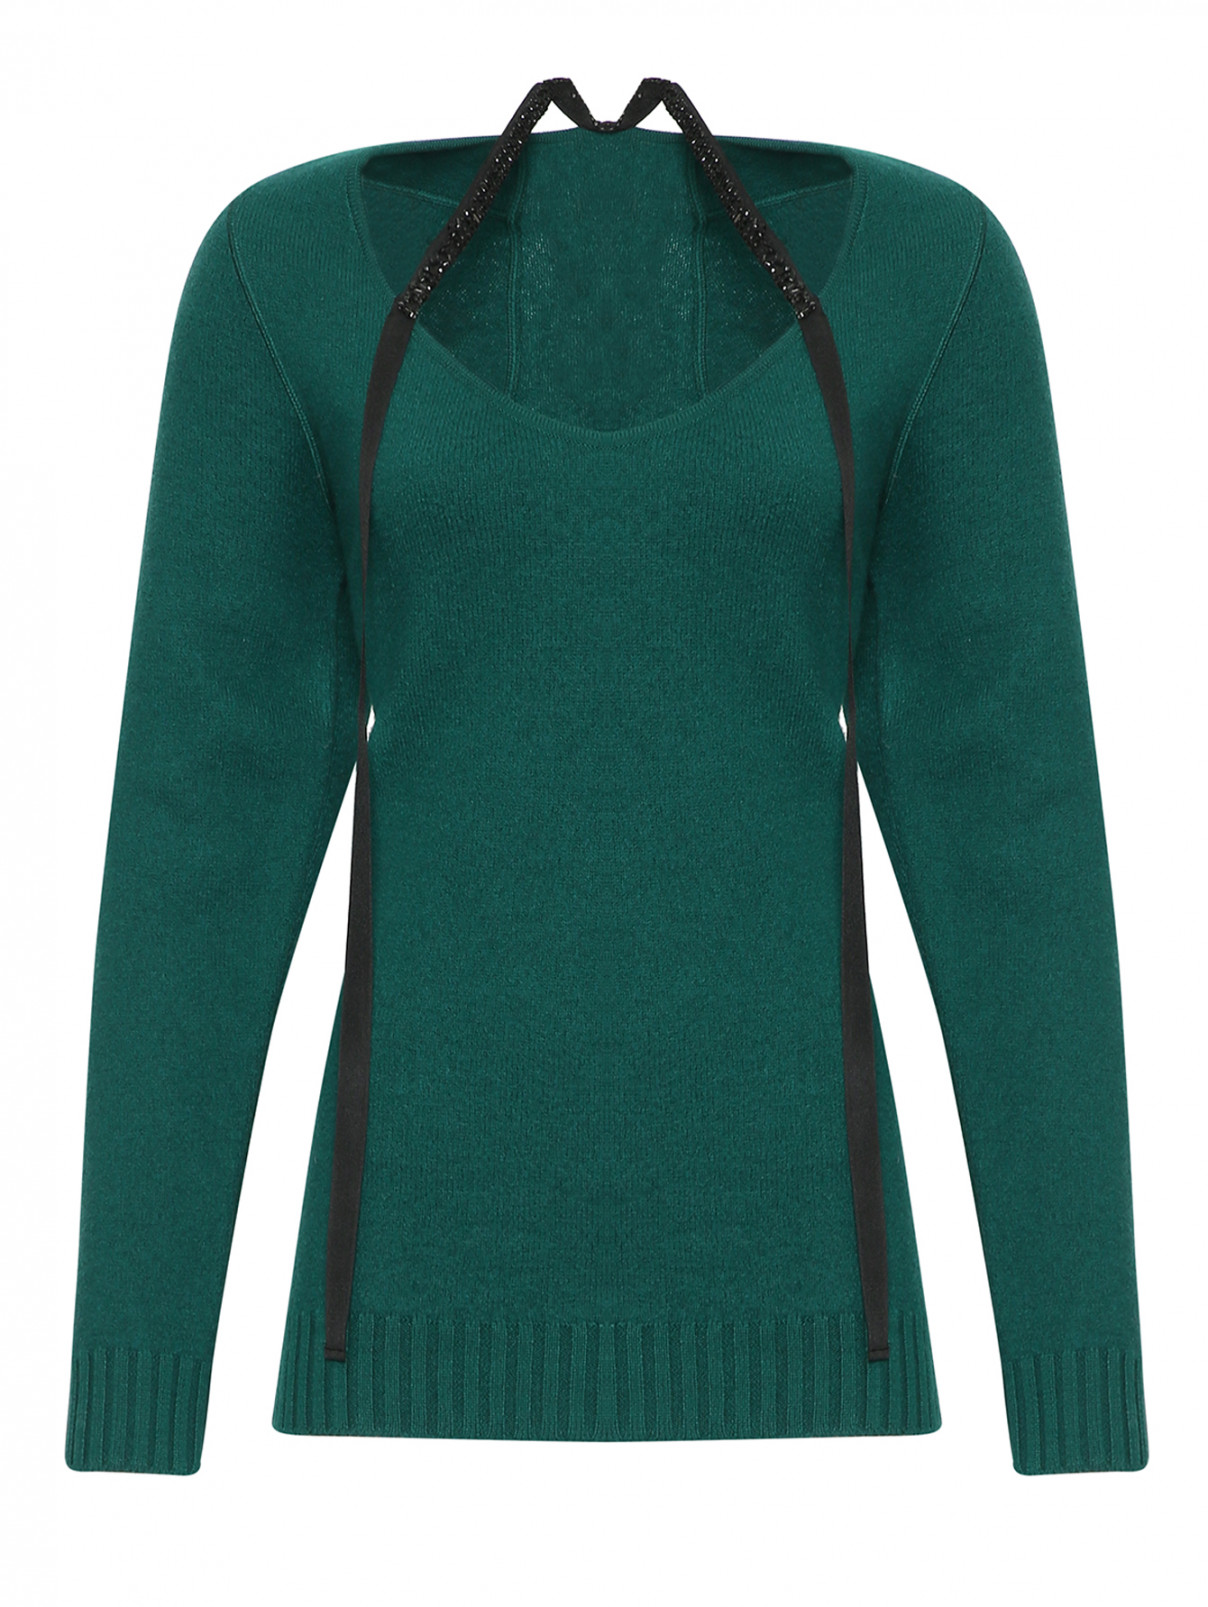 Джемпер из шерсти декорированный стразами N21  –  Общий вид  – Цвет:  Зеленый